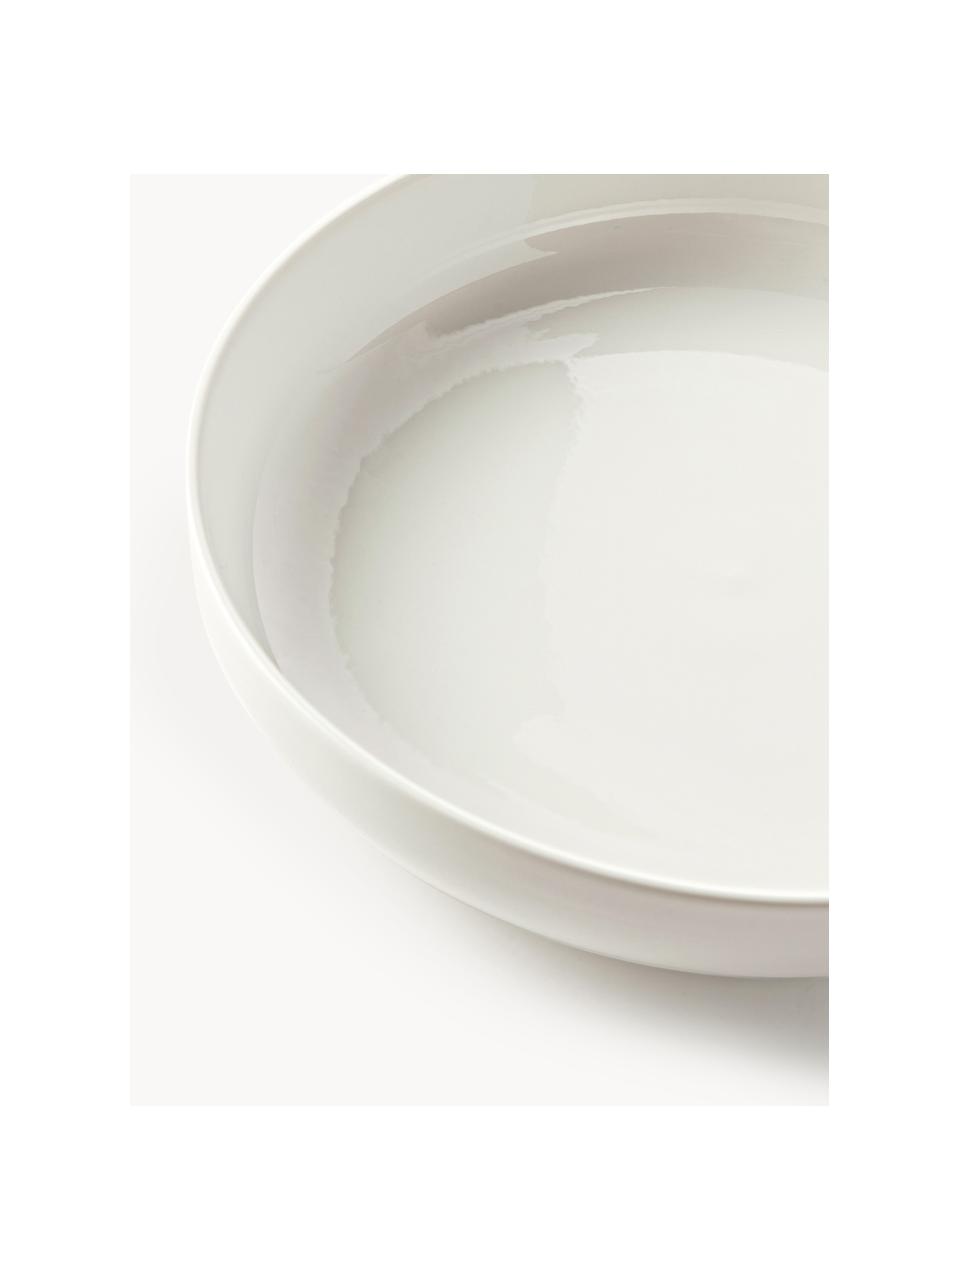 Porzellan Pastateller Nessa, 2 Stück, Hochwertiges Hartporzellan, Off White, glänzend, Ø 21 cm